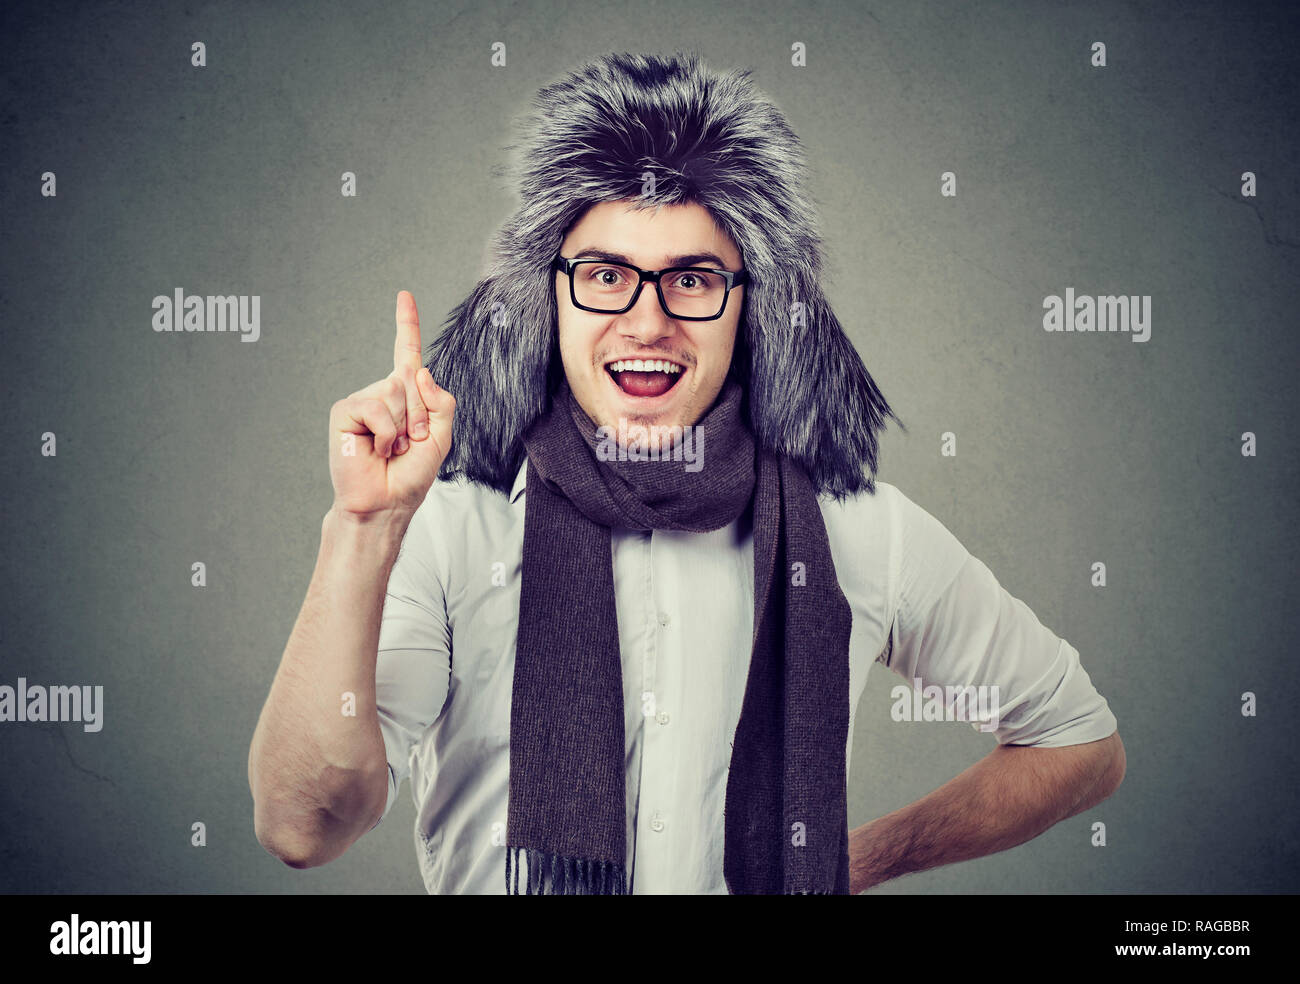 Lächelnd aufgeregt mann im winter Hut und Brille halten Sie einen Finger in der Aufregung an Kamera suchen Stockfoto